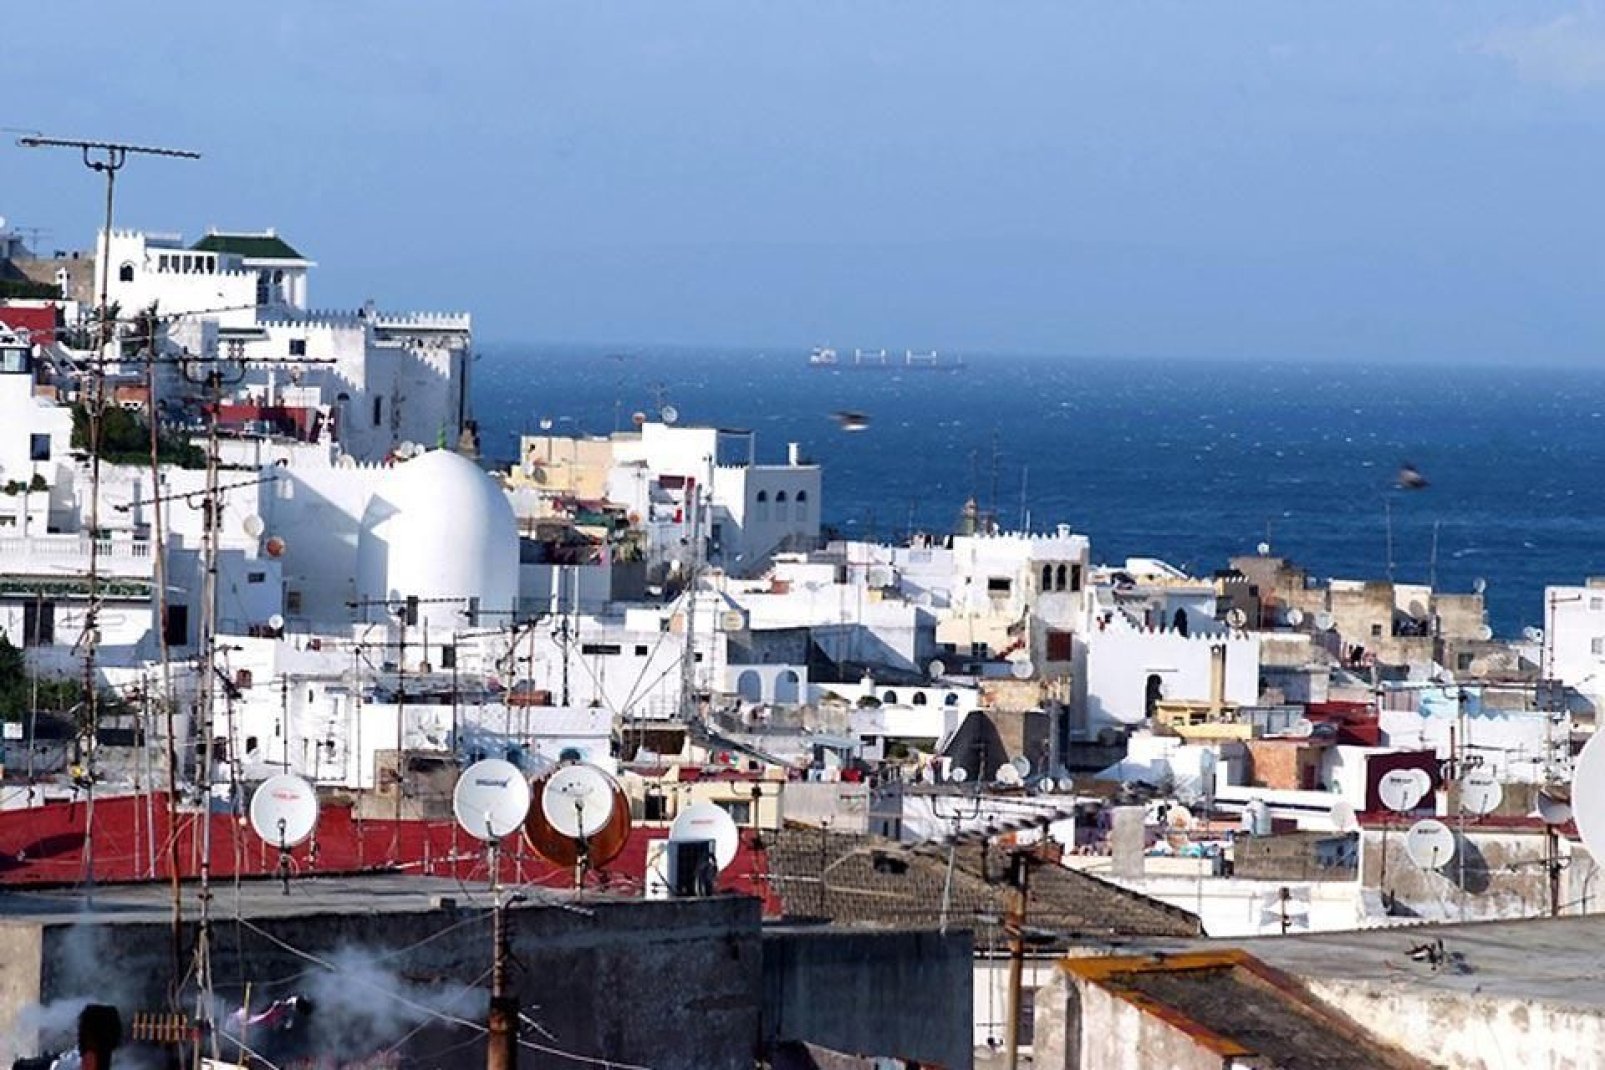 Città mitica il cui nome evoca lo splendore del passato, Tangeri non ha mai perso il suo fascino.